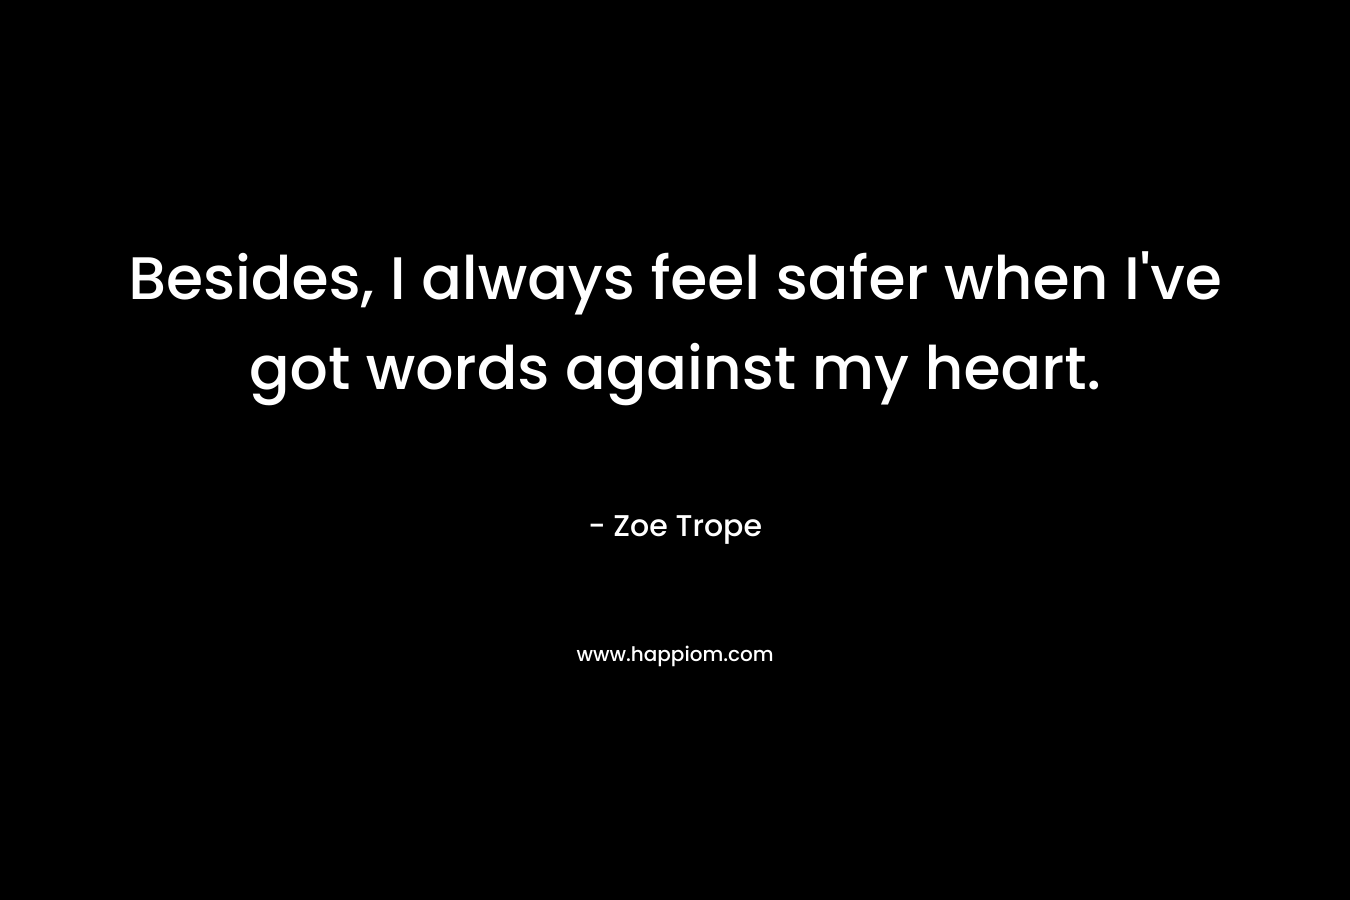 Besides, I always feel safer when I’ve got words against my heart. – Zoe Trope